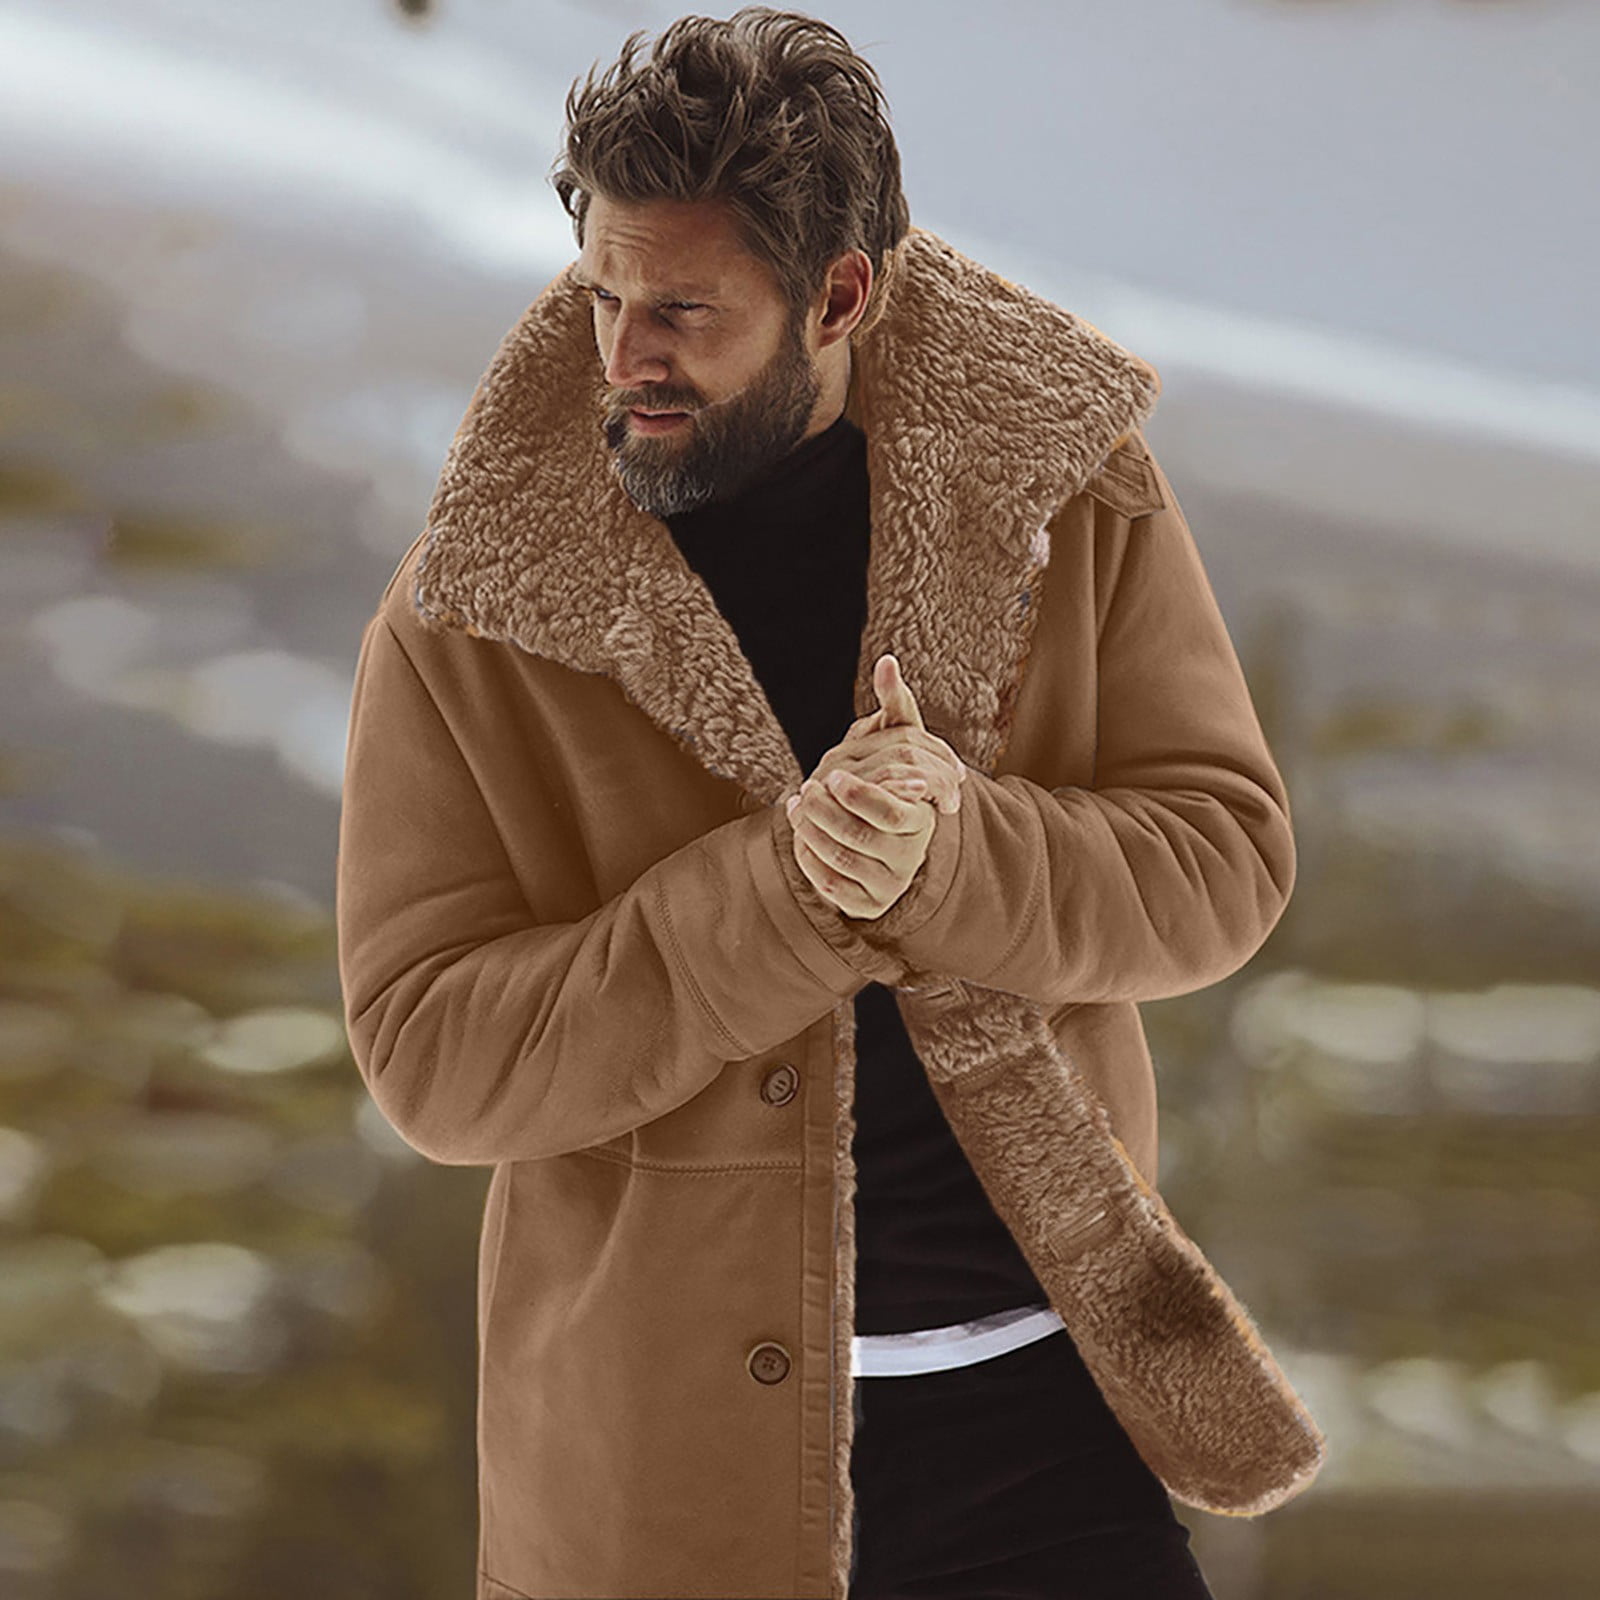 Guvpev Men's Winter Sheepskin Jacket Warm Wool Lined Mountain Faux Lamb  Jackets Jacket - Brown XL 